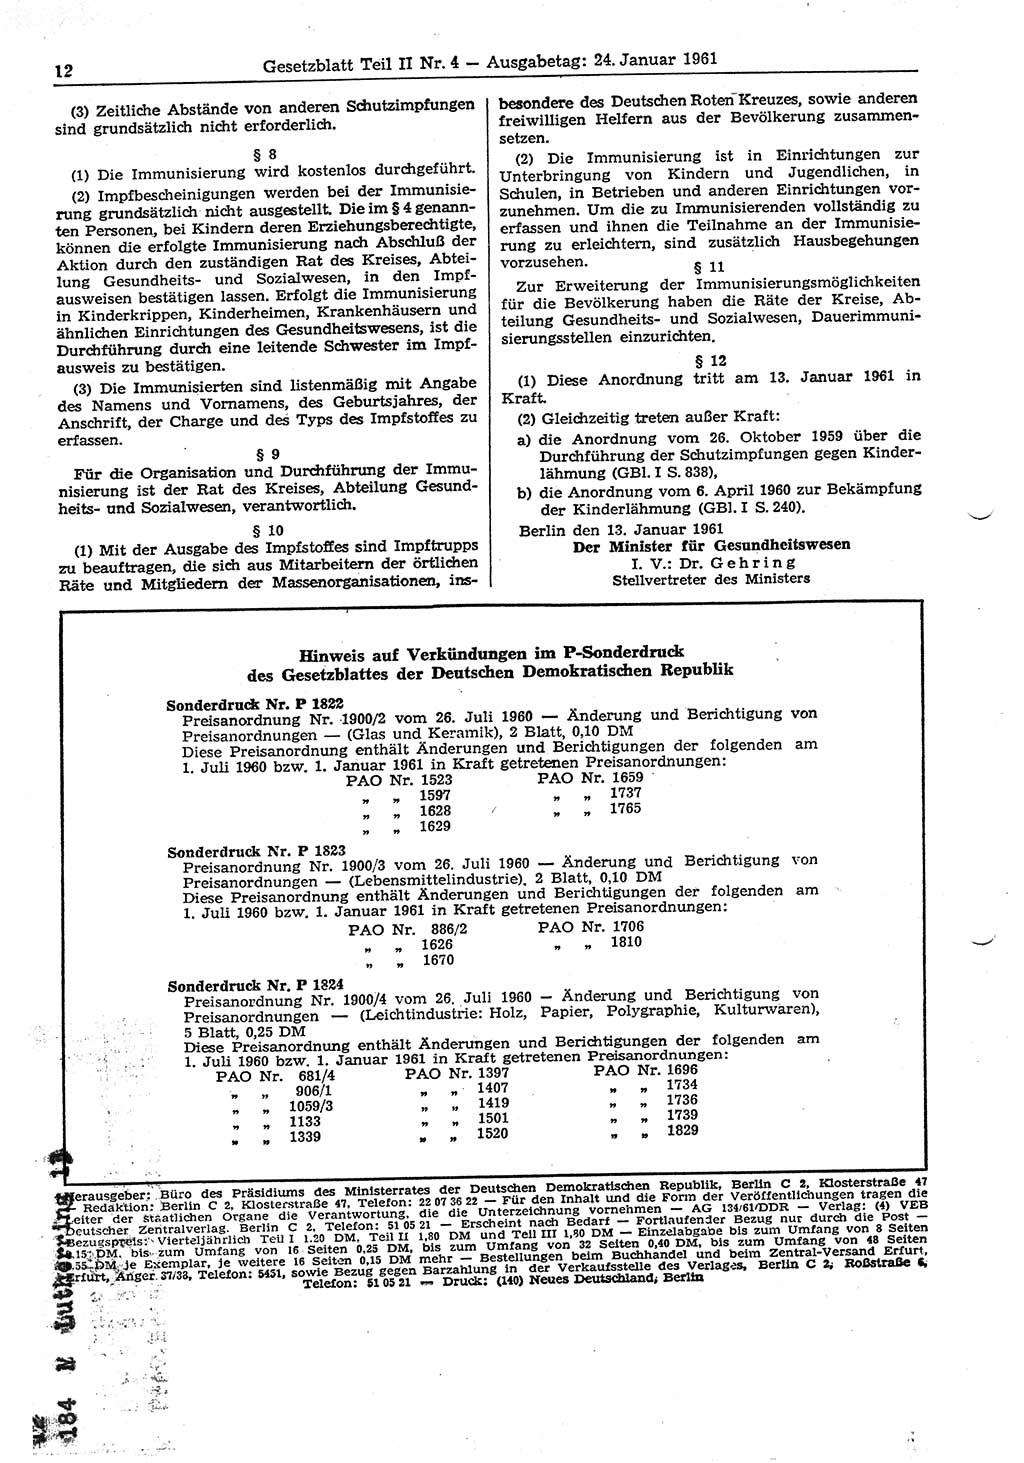 Gesetzblatt (GBl.) der Deutschen Demokratischen Republik (DDR) Teil ⅠⅠ 1961, Seite 12 (GBl. DDR ⅠⅠ 1961, S. 12)